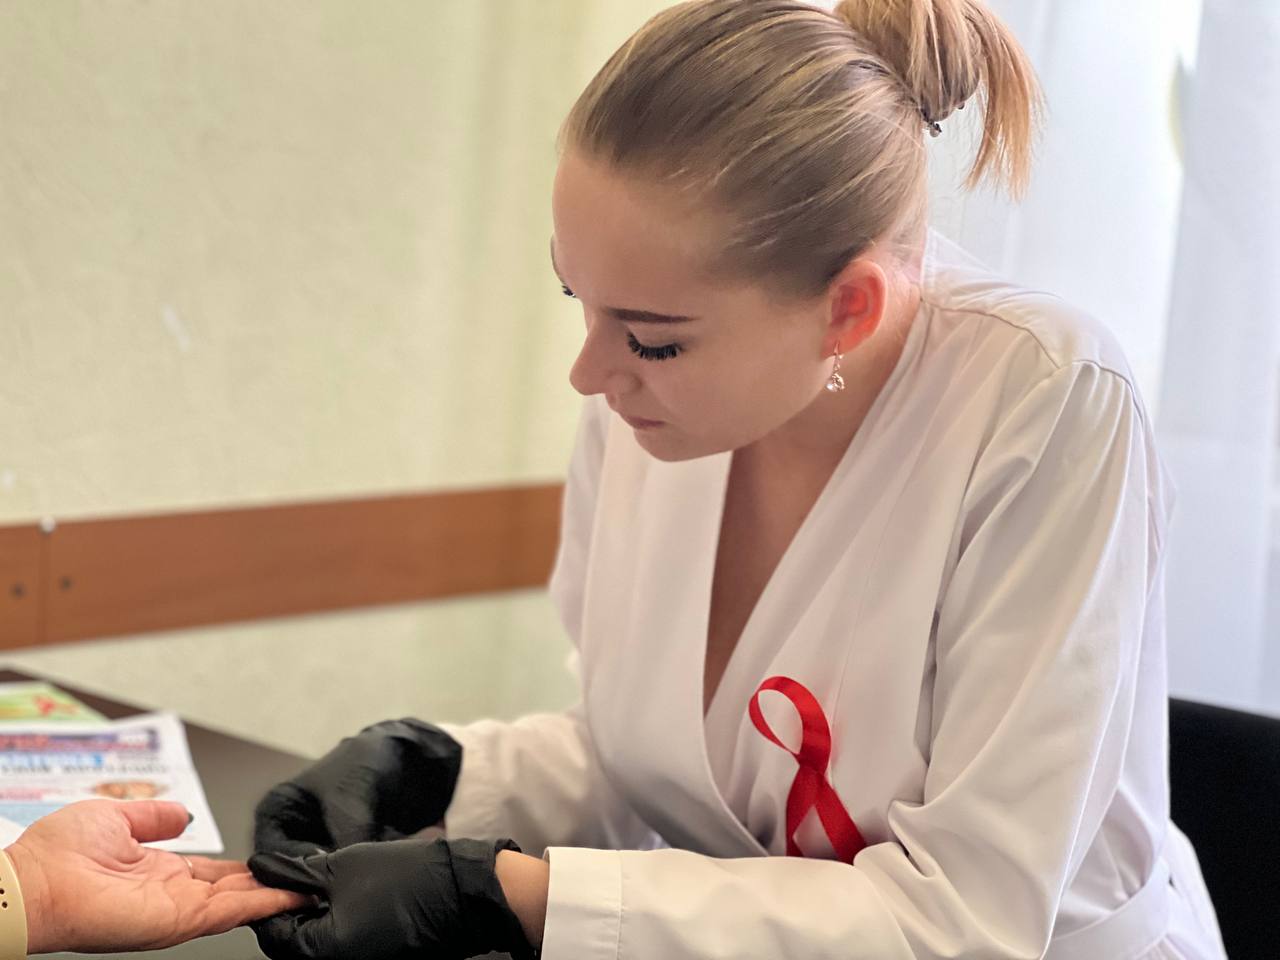 Узнай свой тест: в День борьбы со СПИДом В Донецкой Народной Республике прошла масштабная акция